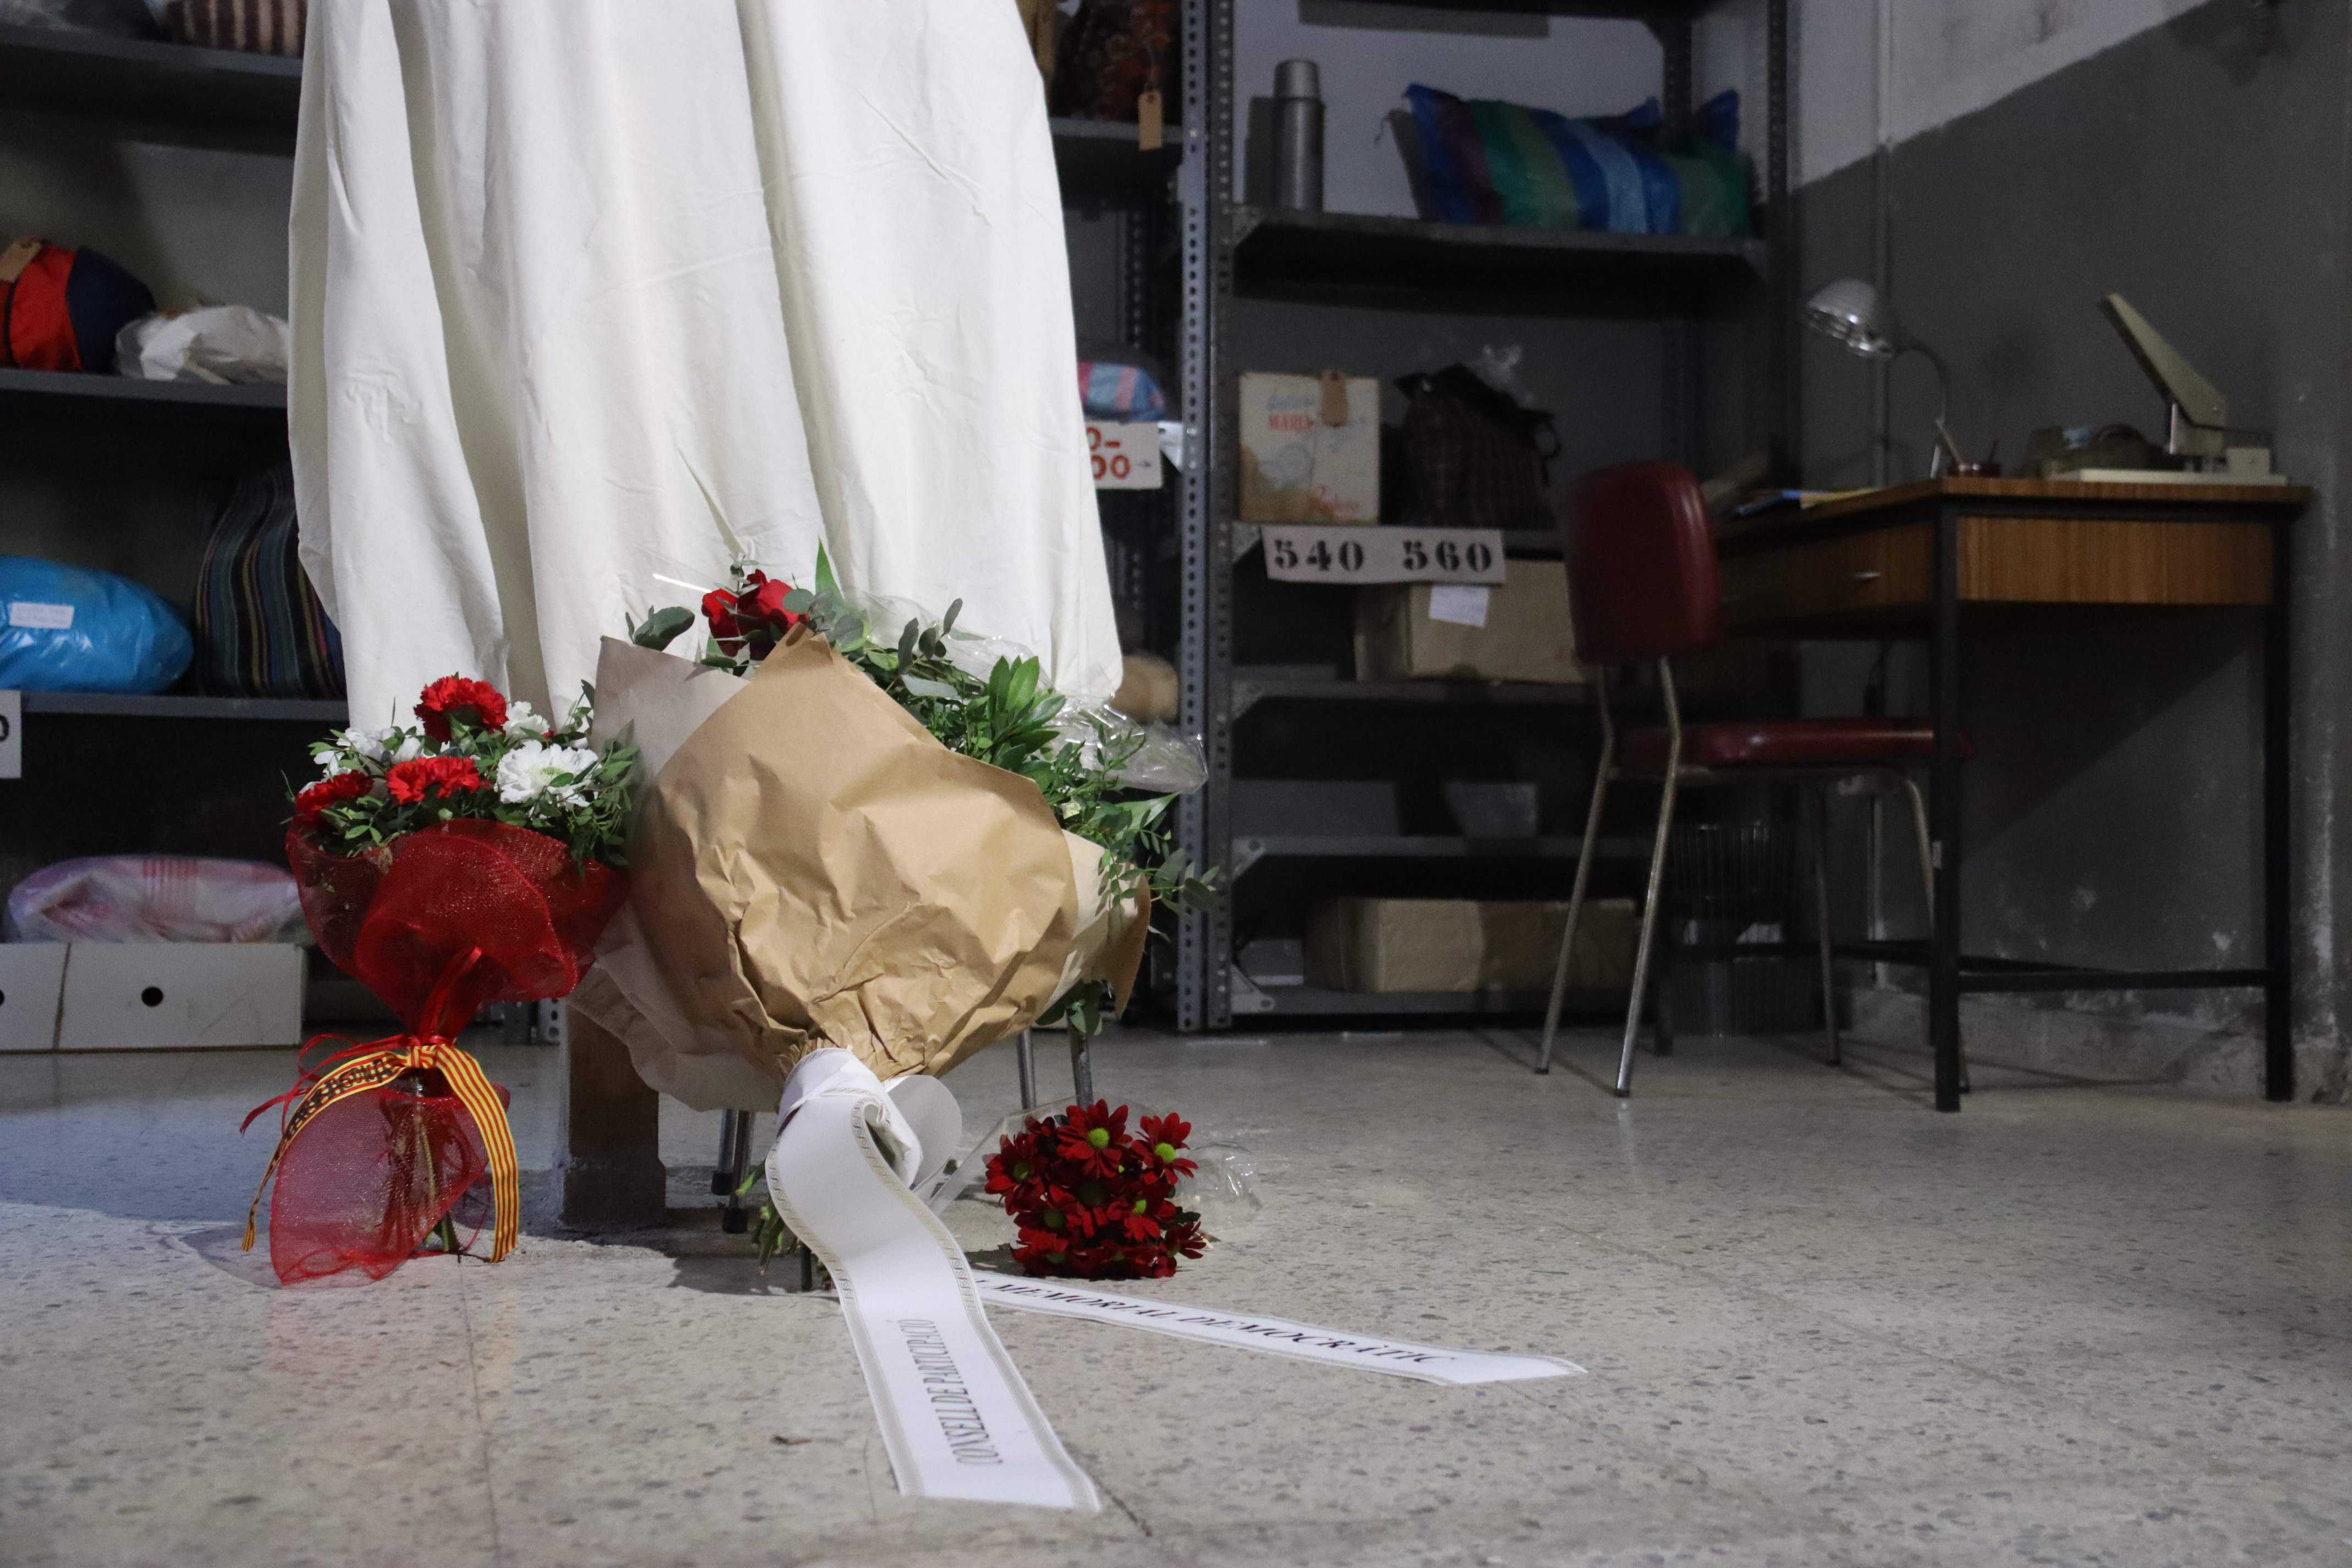 Emotivo homenaje a Puig Antich: lágrimas y silencio de familiares y víctimas del franquismo